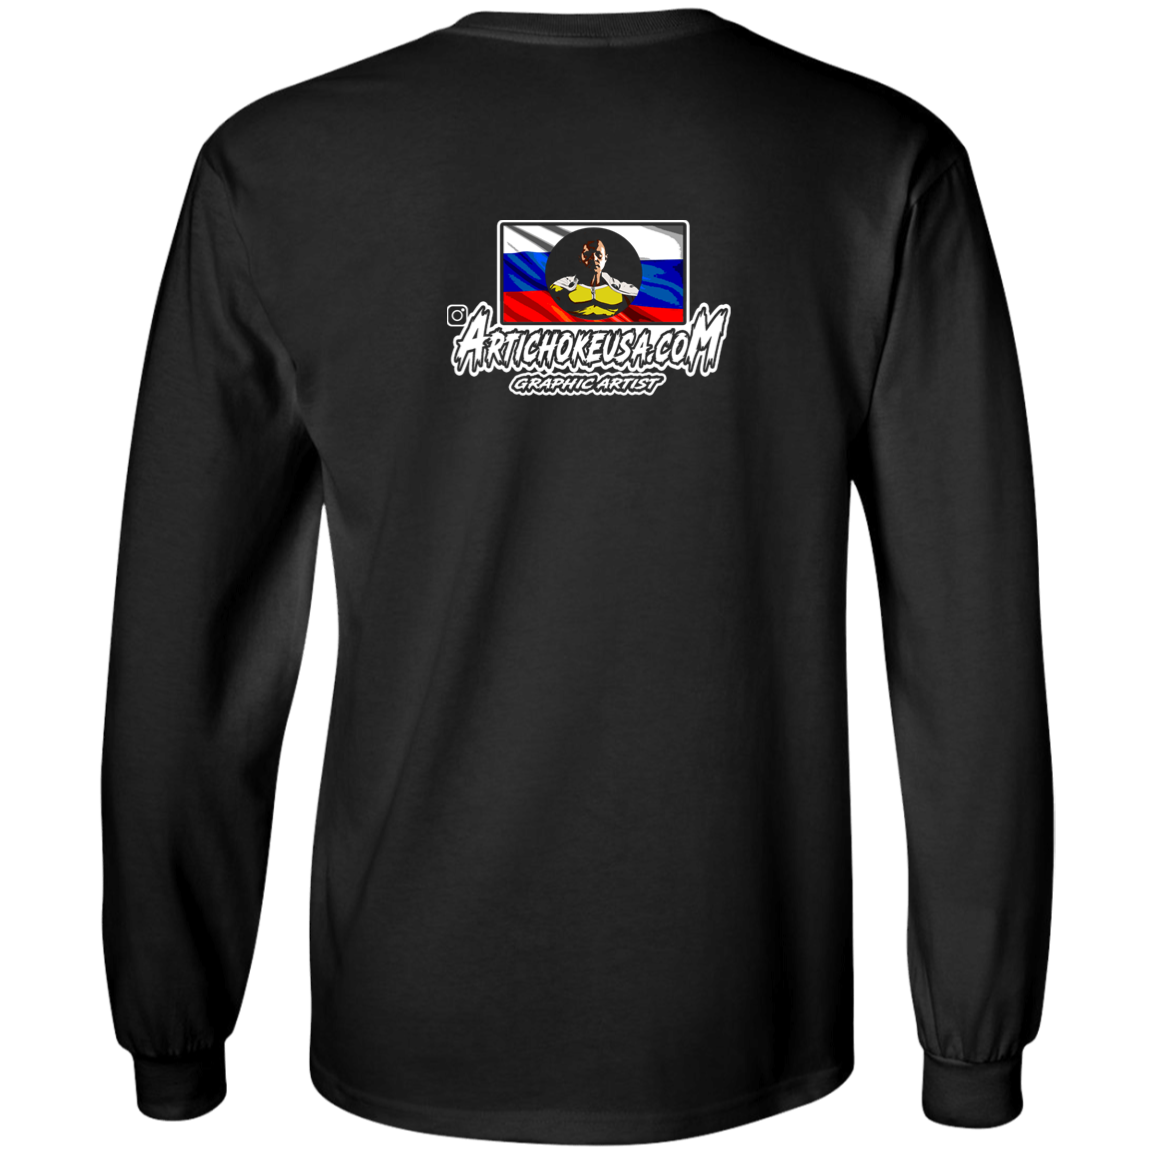 ArtichokeUSA Custom Design. One Punch Fedor. Fedor Emelianenko/One Punch Man Fan Art. Youth LS T-Shirt